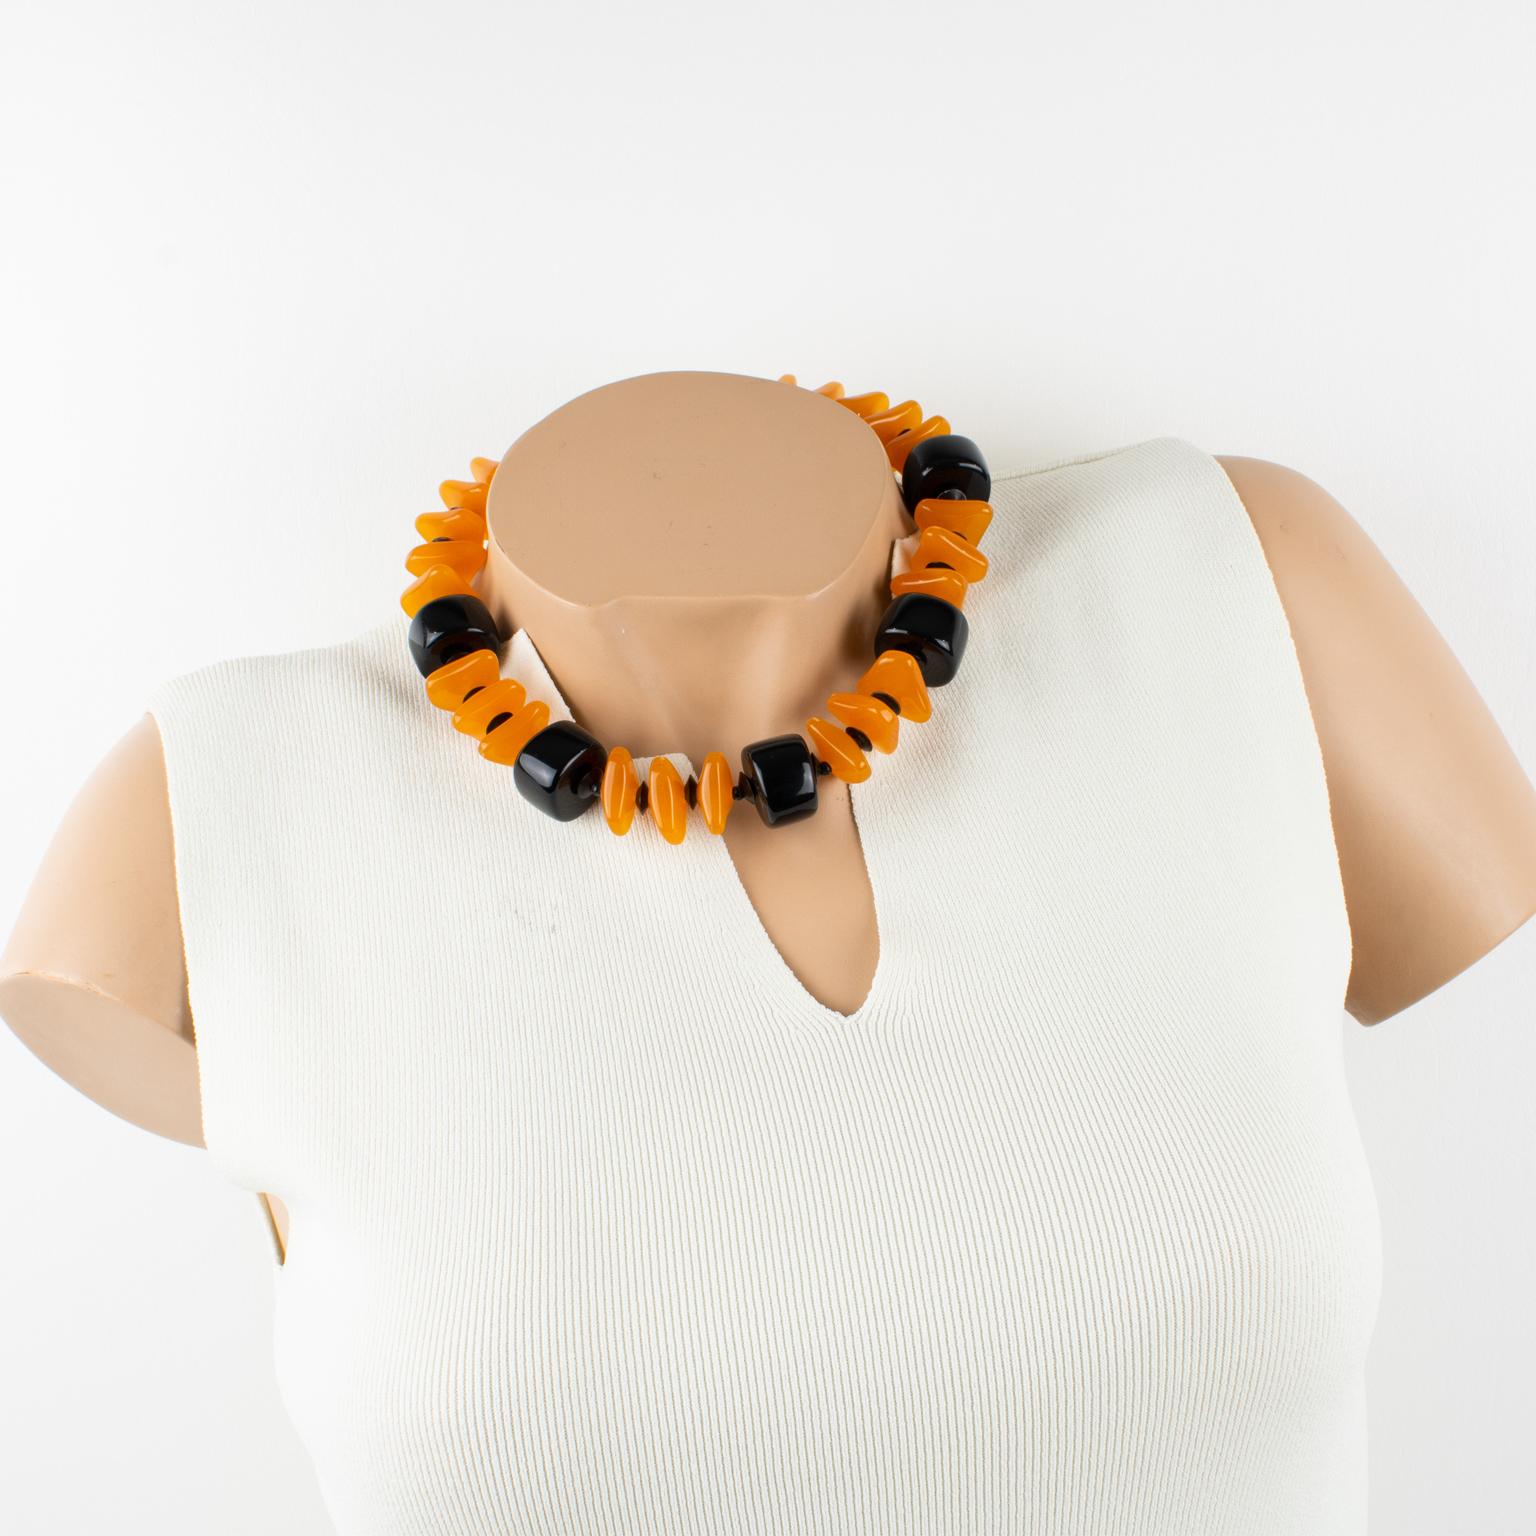 Elegantes Angela Caputi, in Italien hergestelltes Harz-Halsband. Jede Perle ist aus kantaloupe-orangefarbenem Harz mit schwarzem Kontrast geschnitzt und geometrisch geformt. Ihre Farbkombination ist immer sehr stilvoll, perfekt für legere und